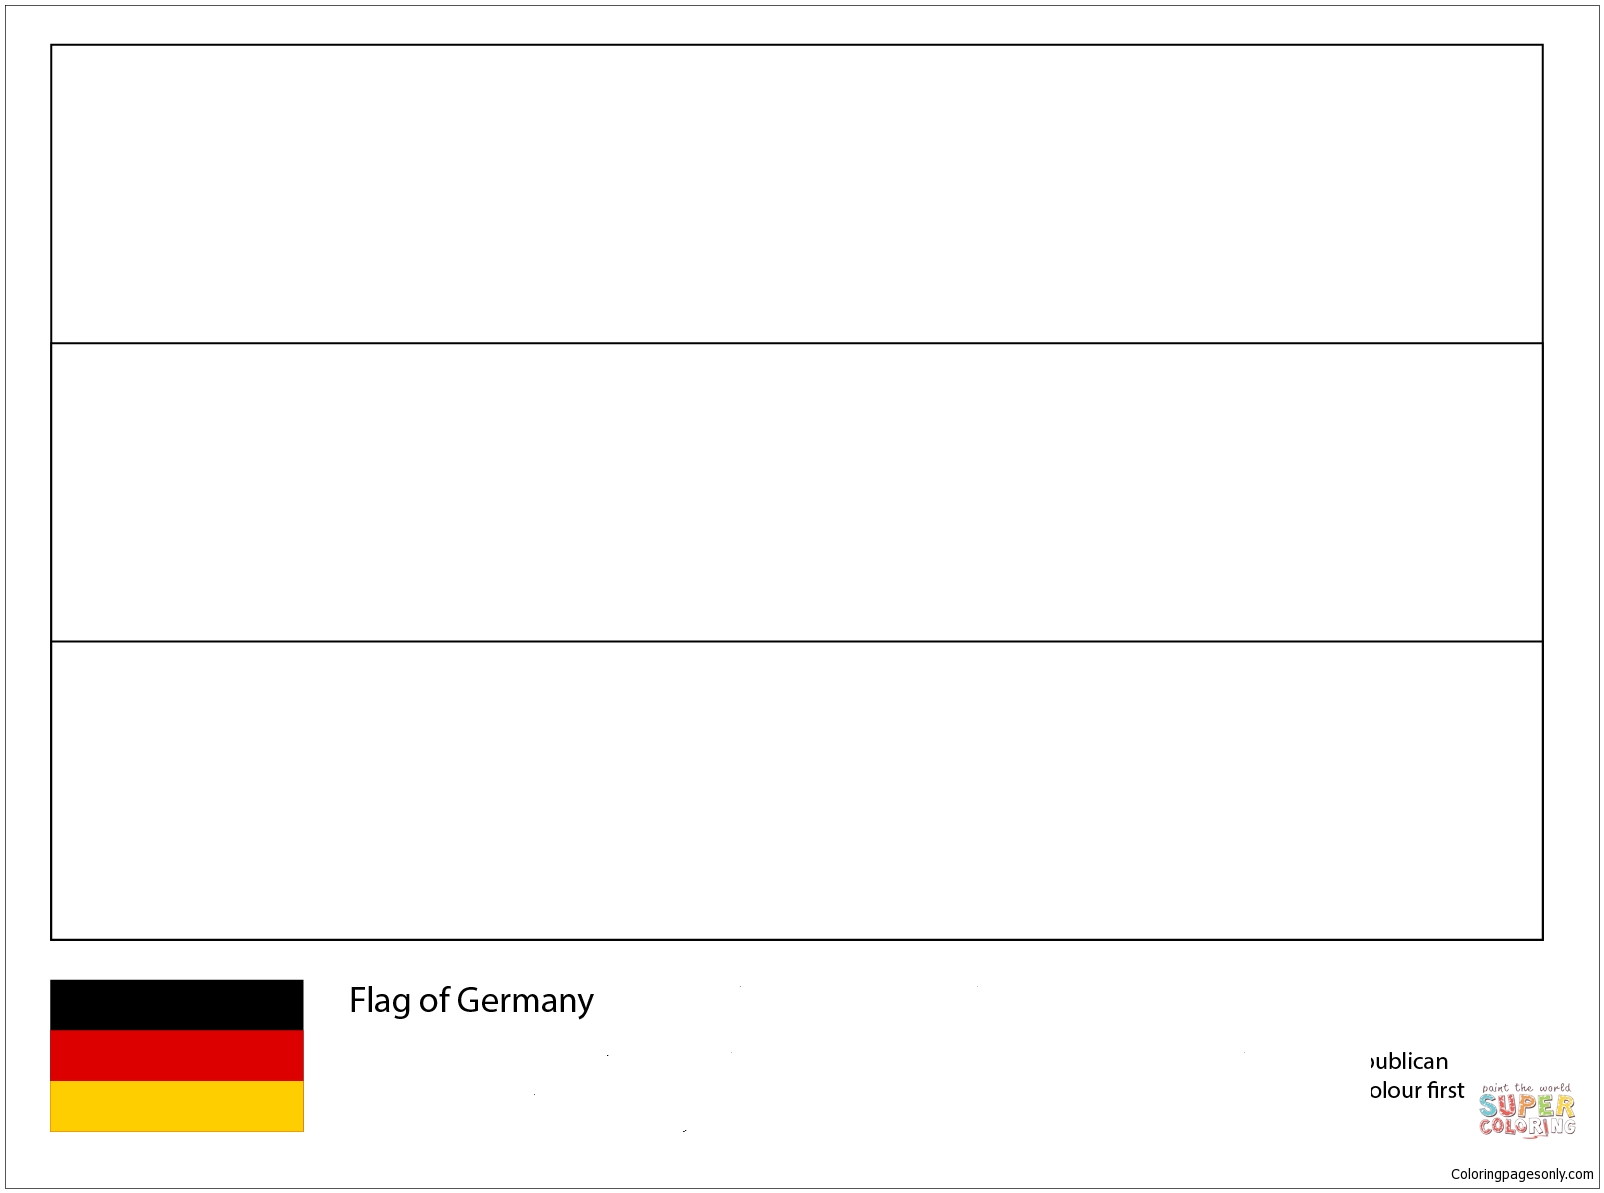 德国队旗-2018 年世界杯 来自 2018 年世界杯旗帜